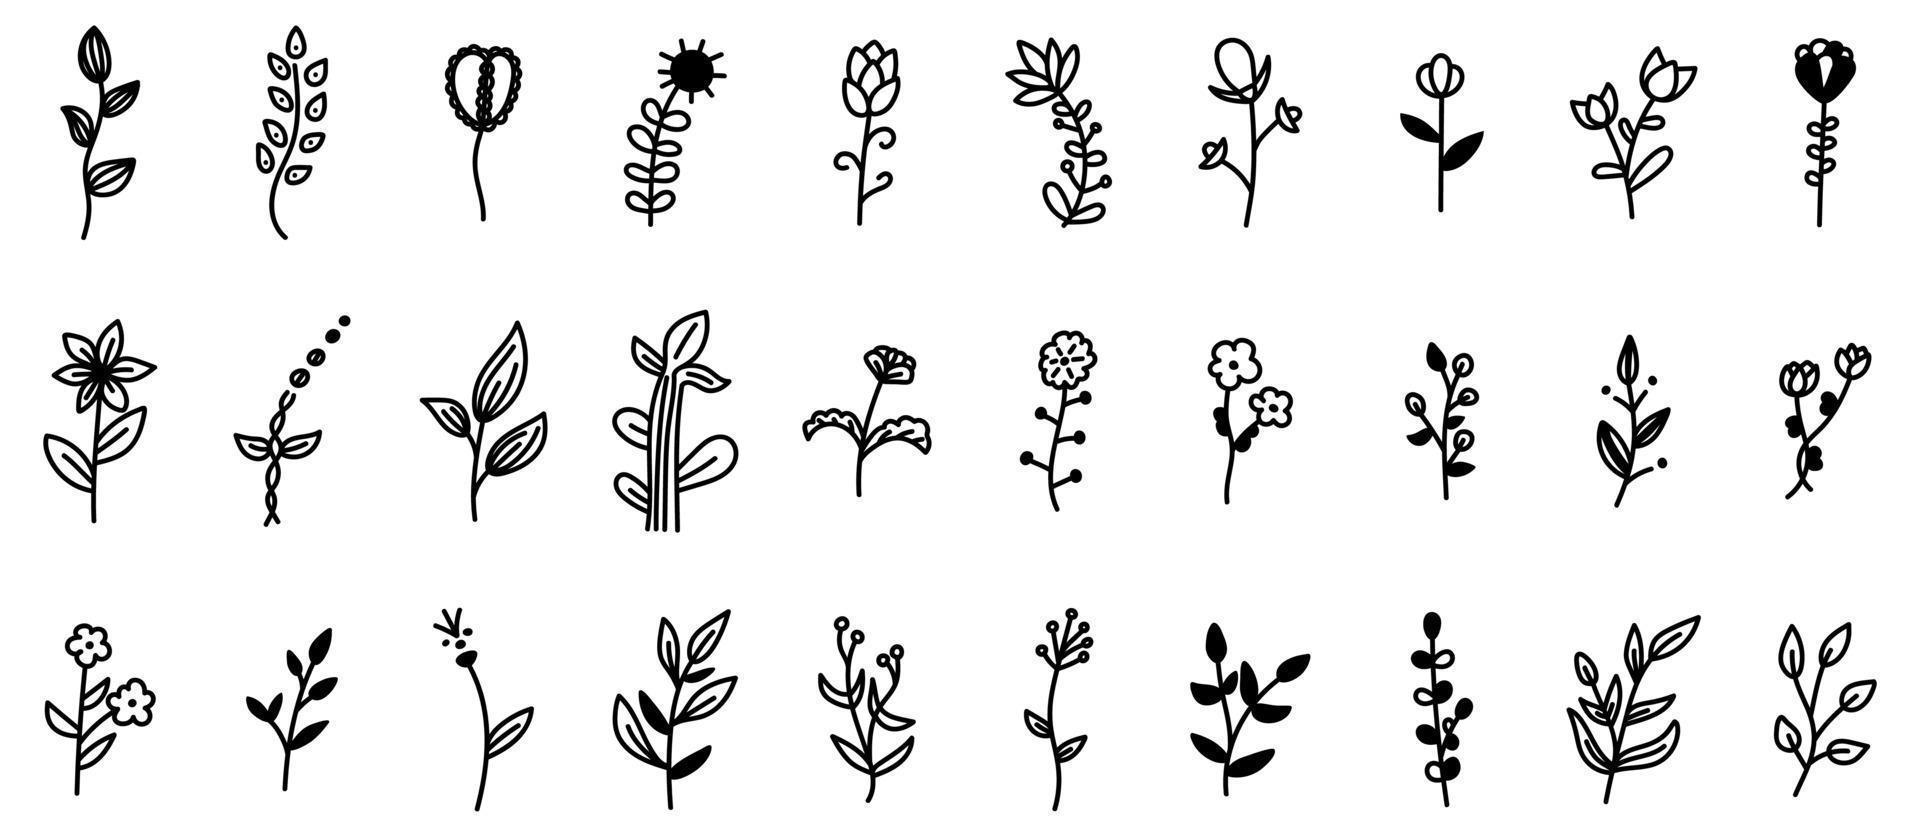 uppsättning doodle blommor och grenar med blad dekorativa element. blommig, botanisk vektorillustration design, isolerade handritade element. vektor